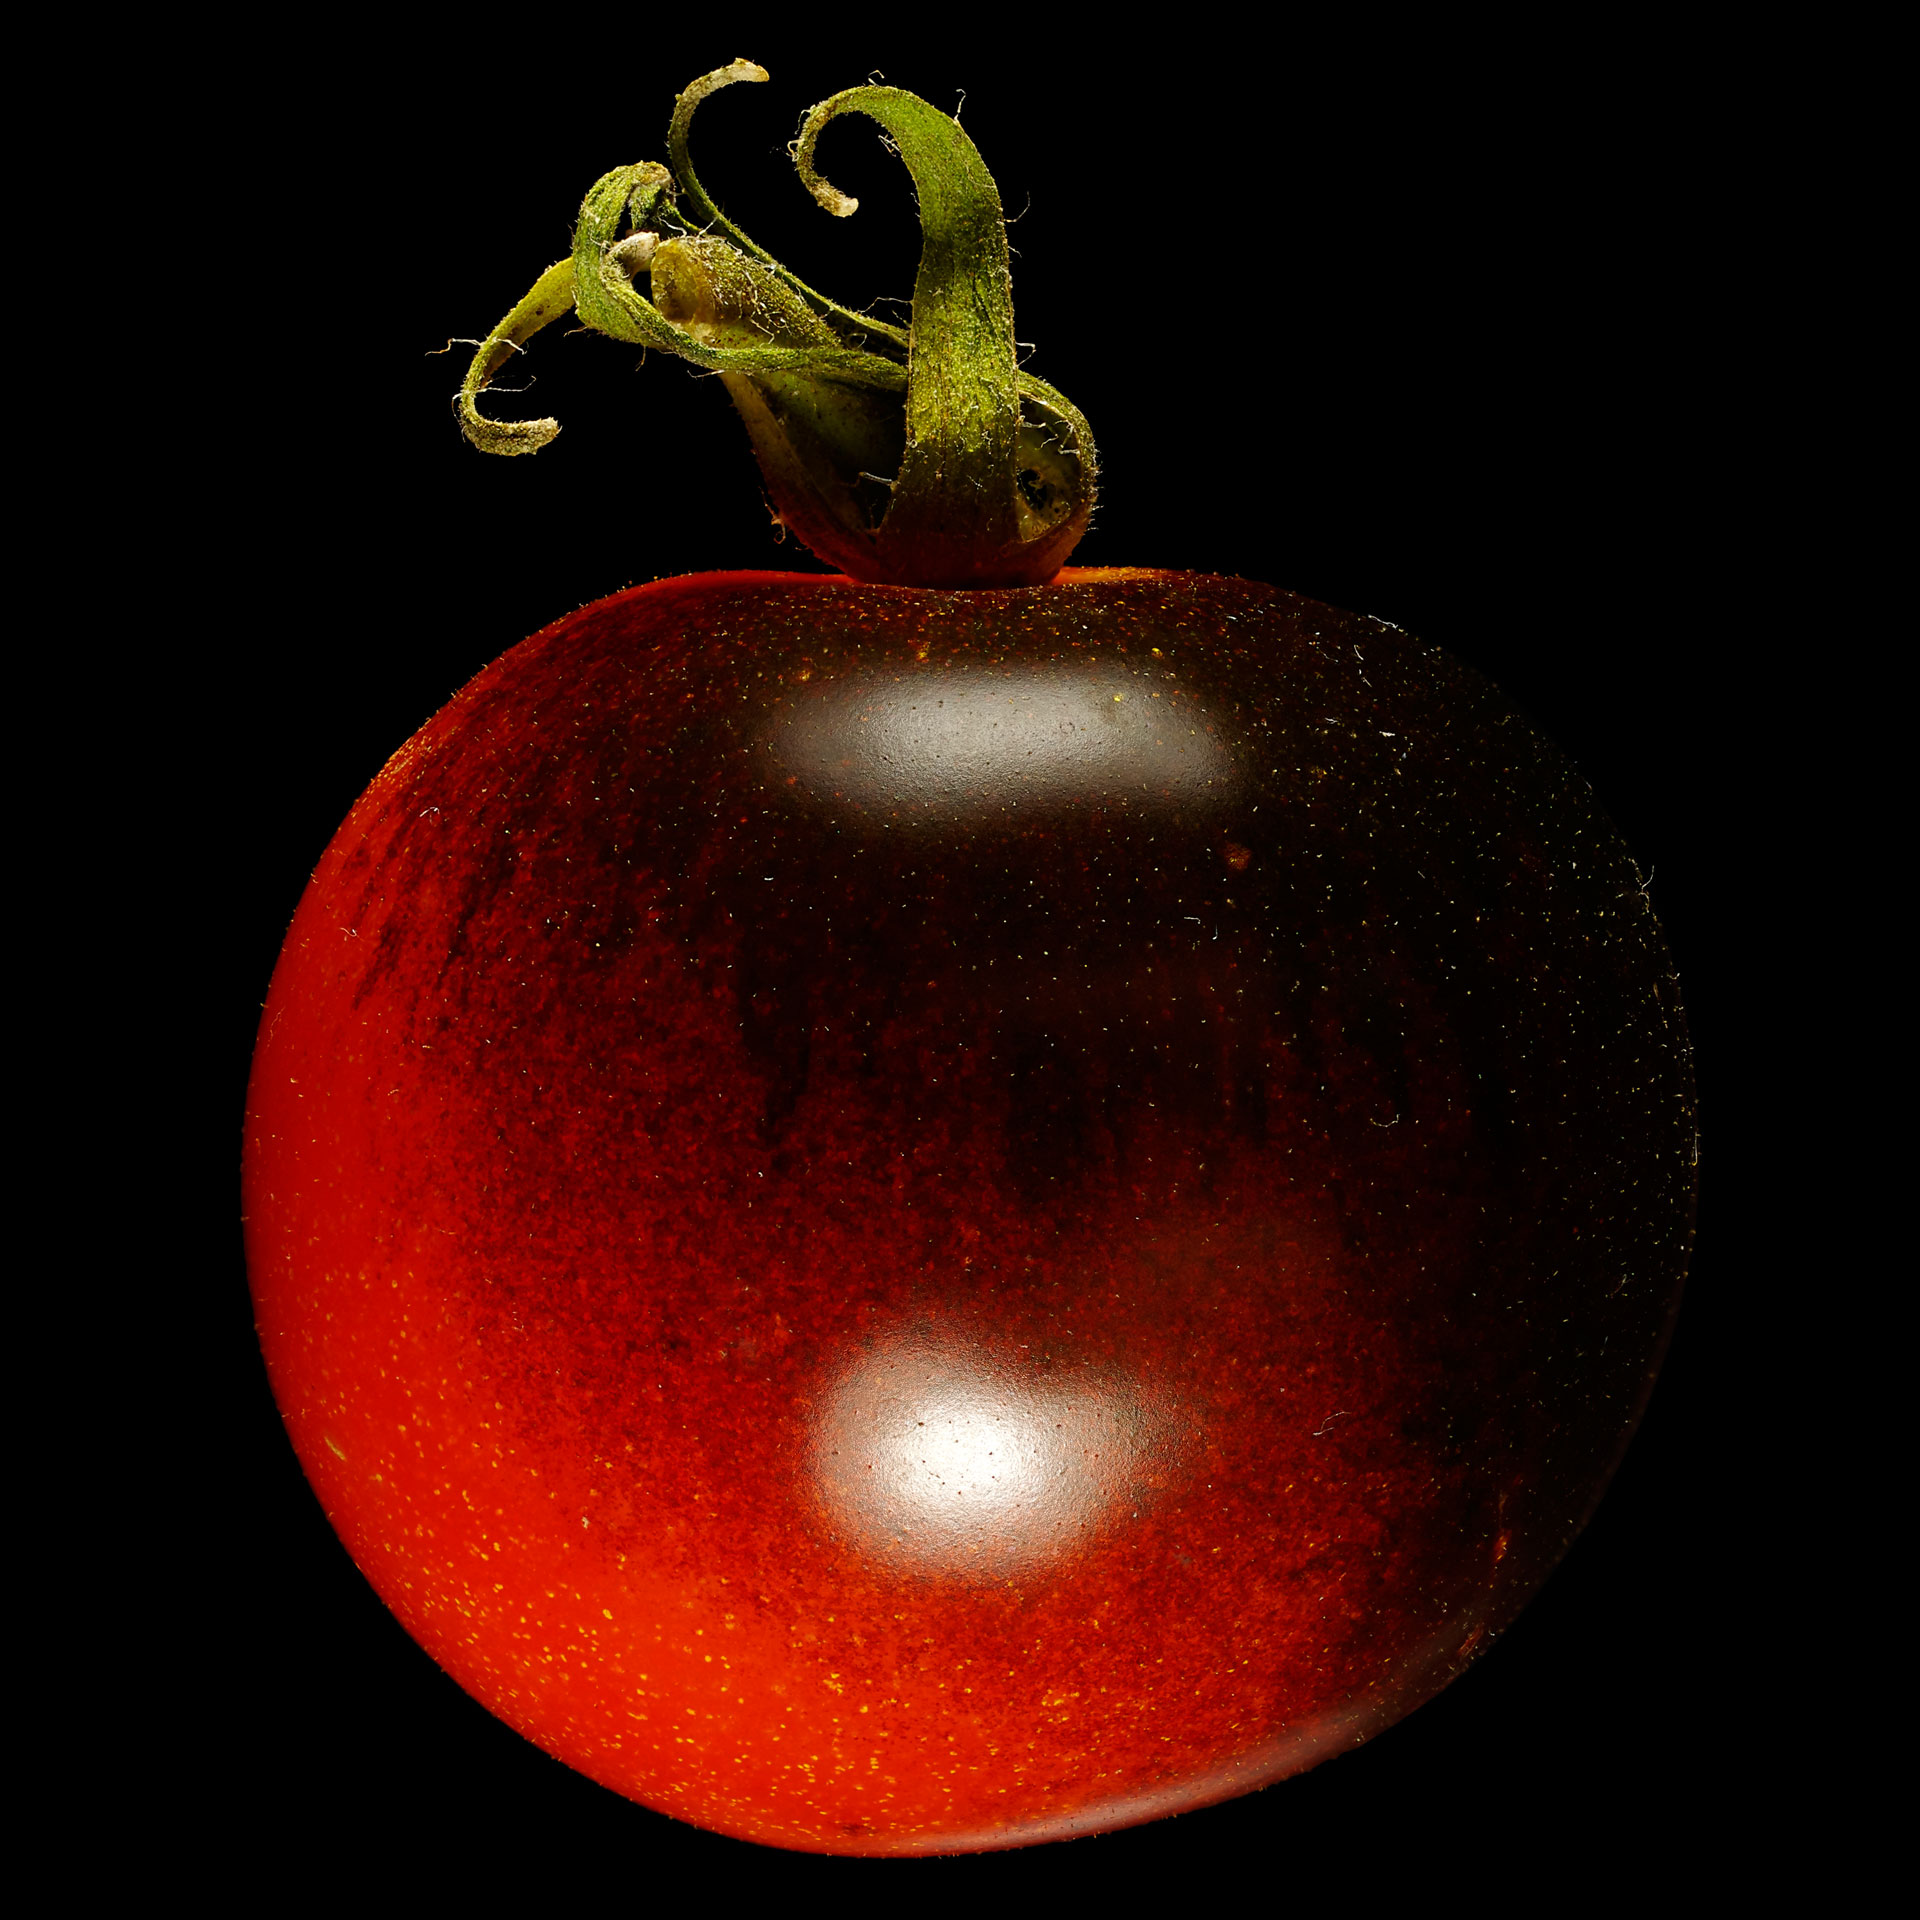 Indigo rose tomato: Solanum lycopersicum ‚Indigo Rose‘